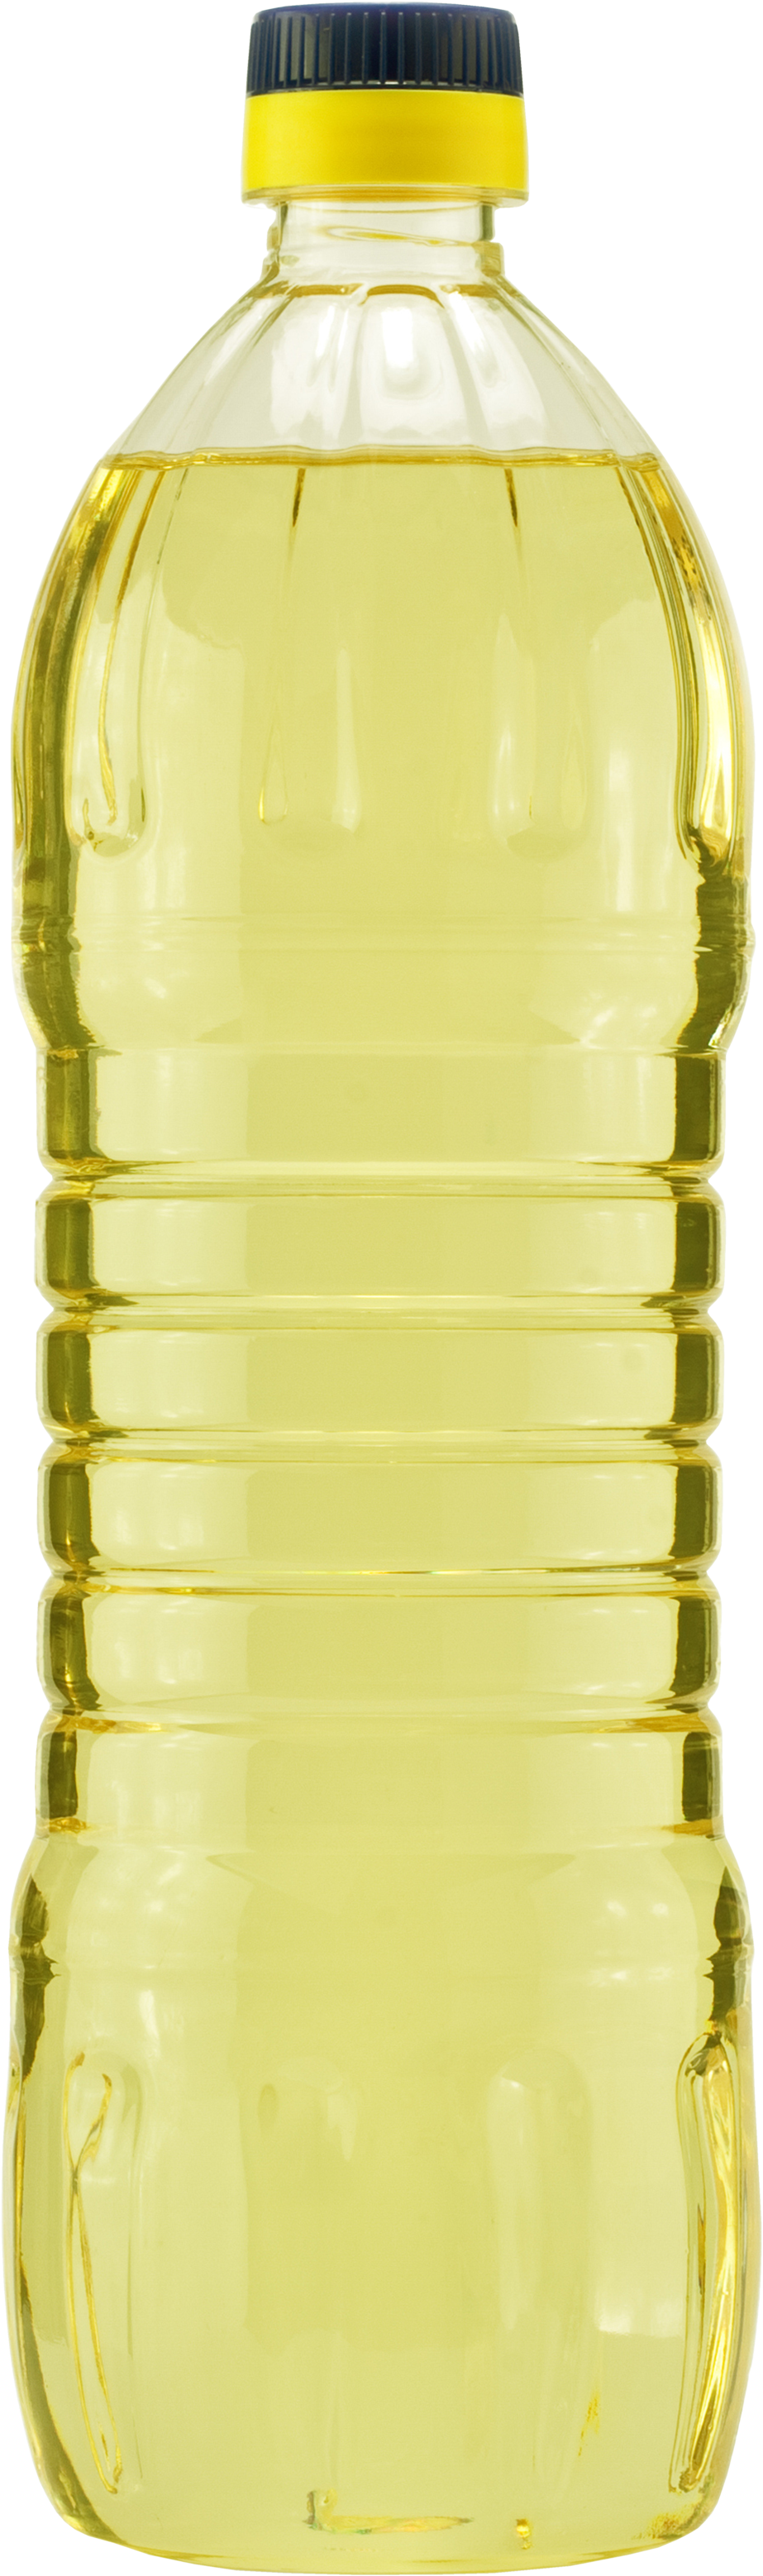 Olej słonecznikowy